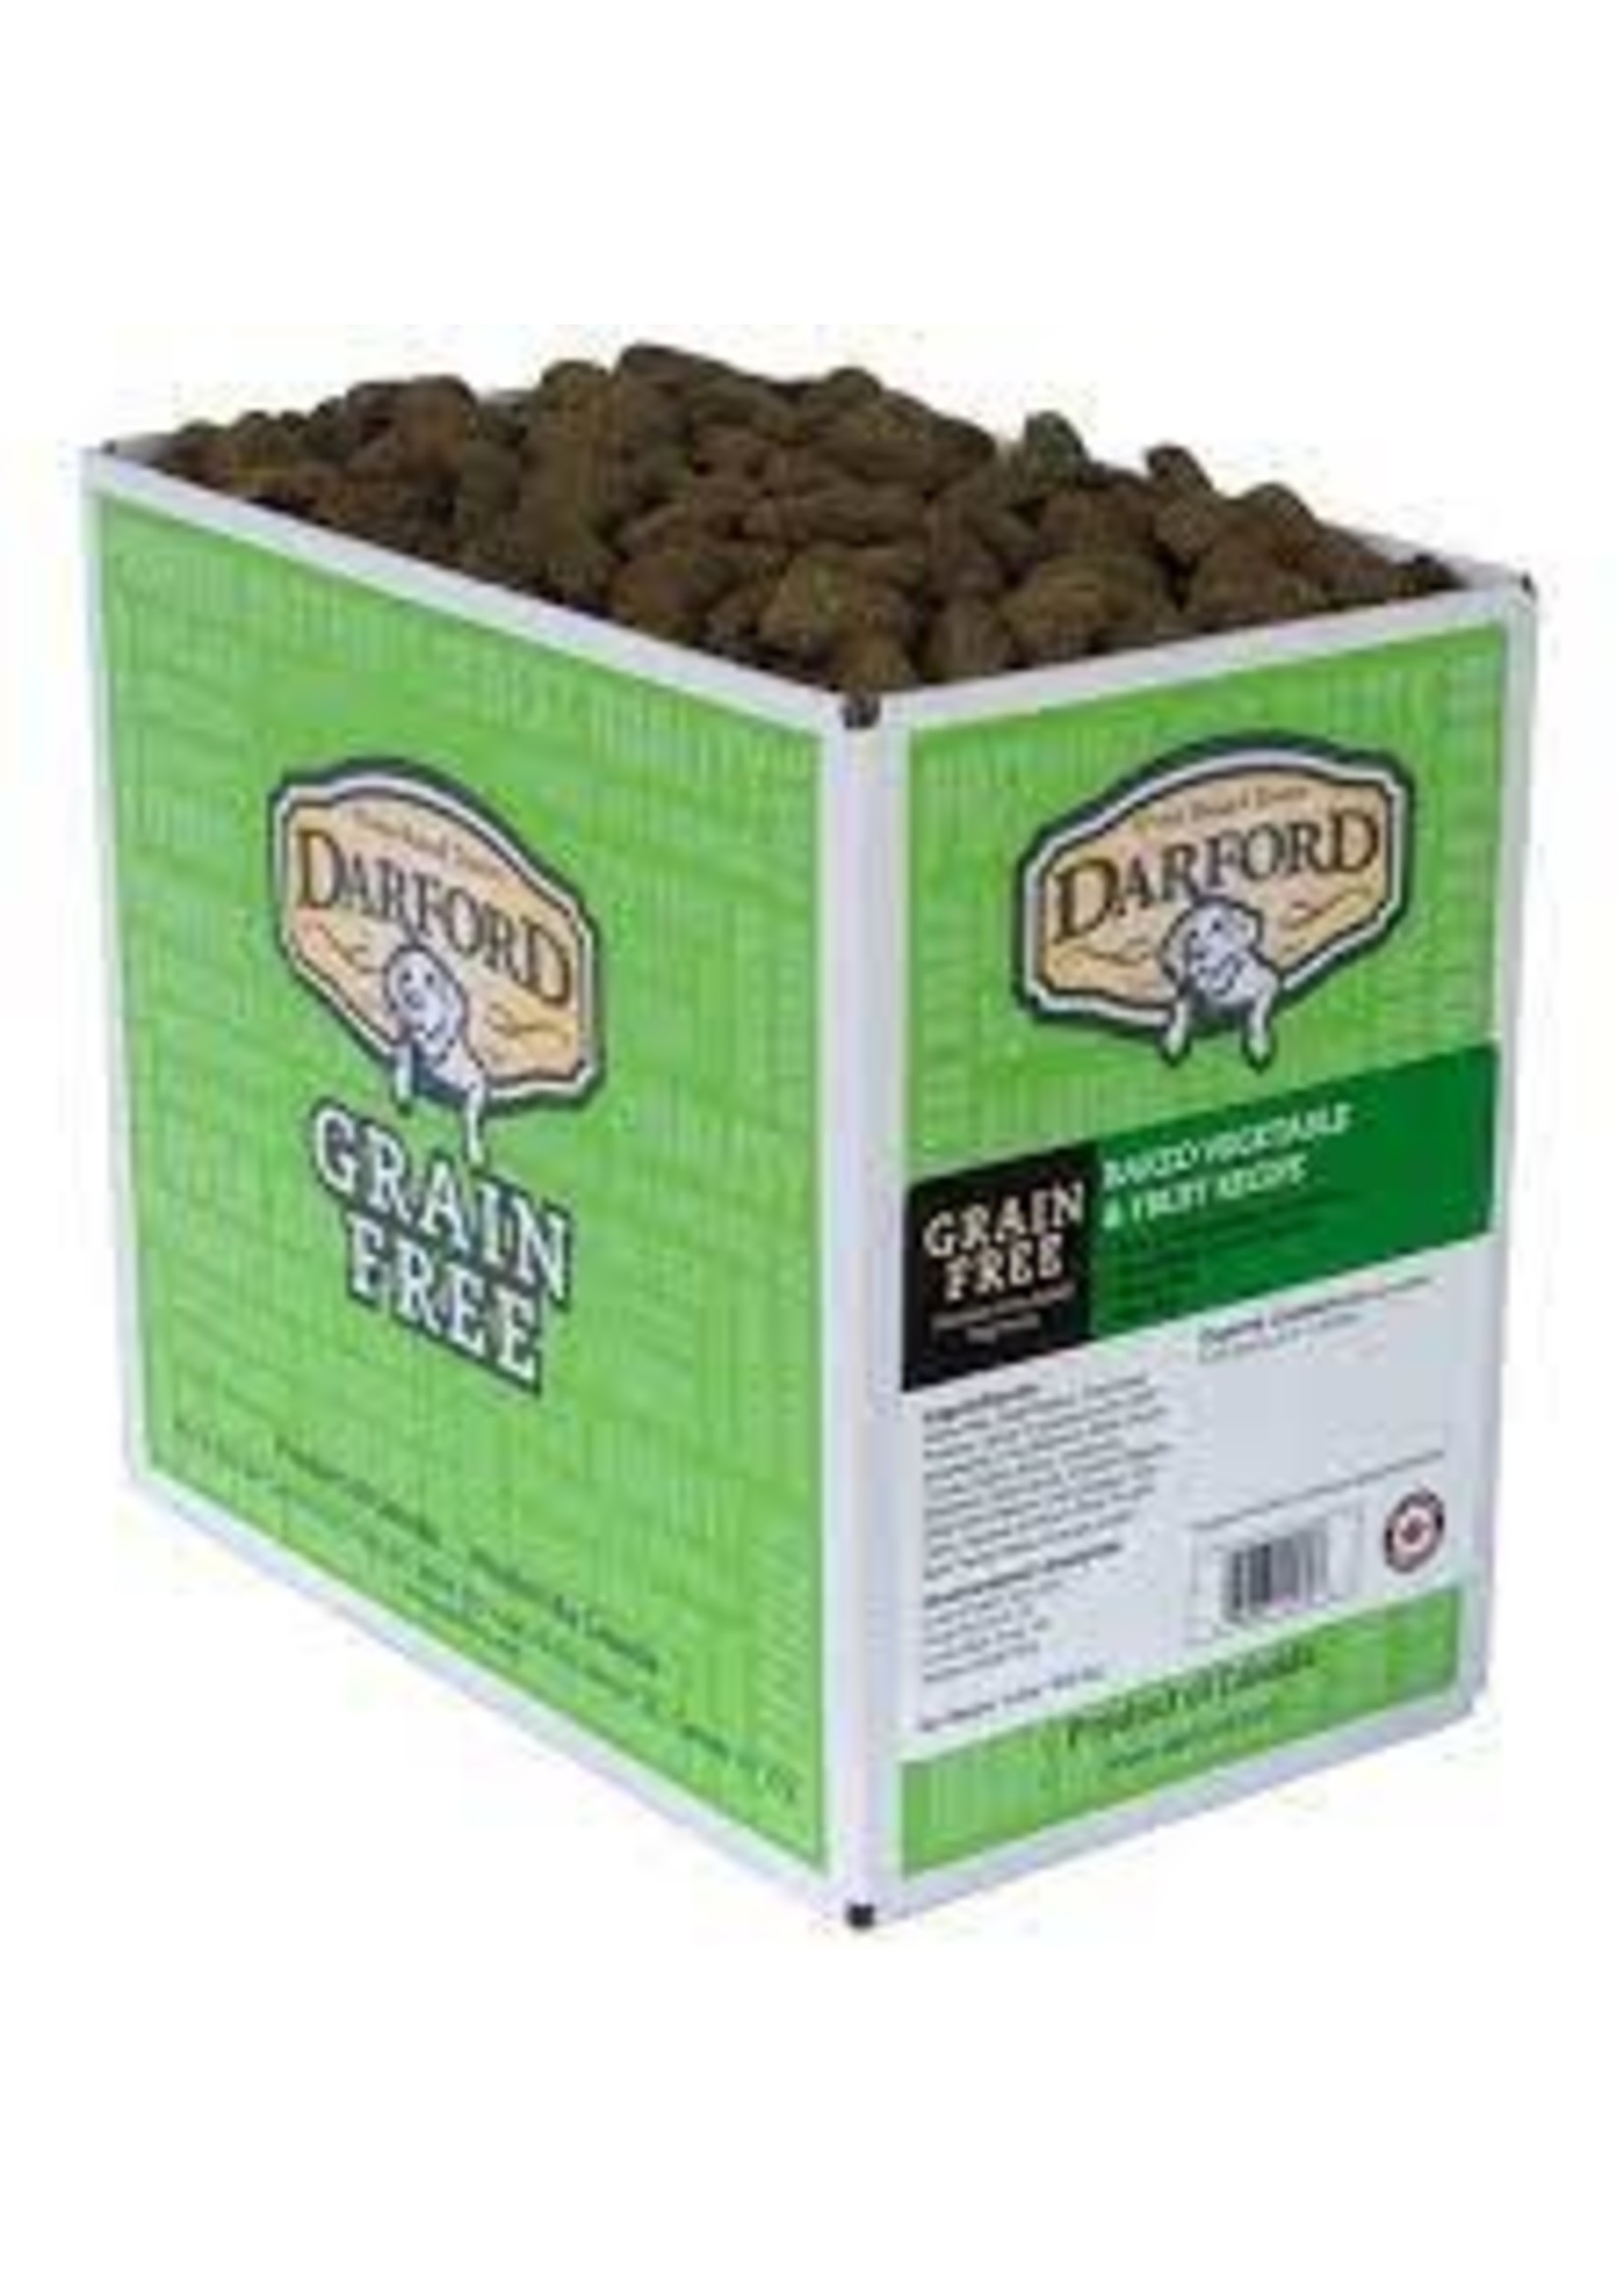 Darford Darford - Grain Free Baked Vegetable & Fruit (per ounce)